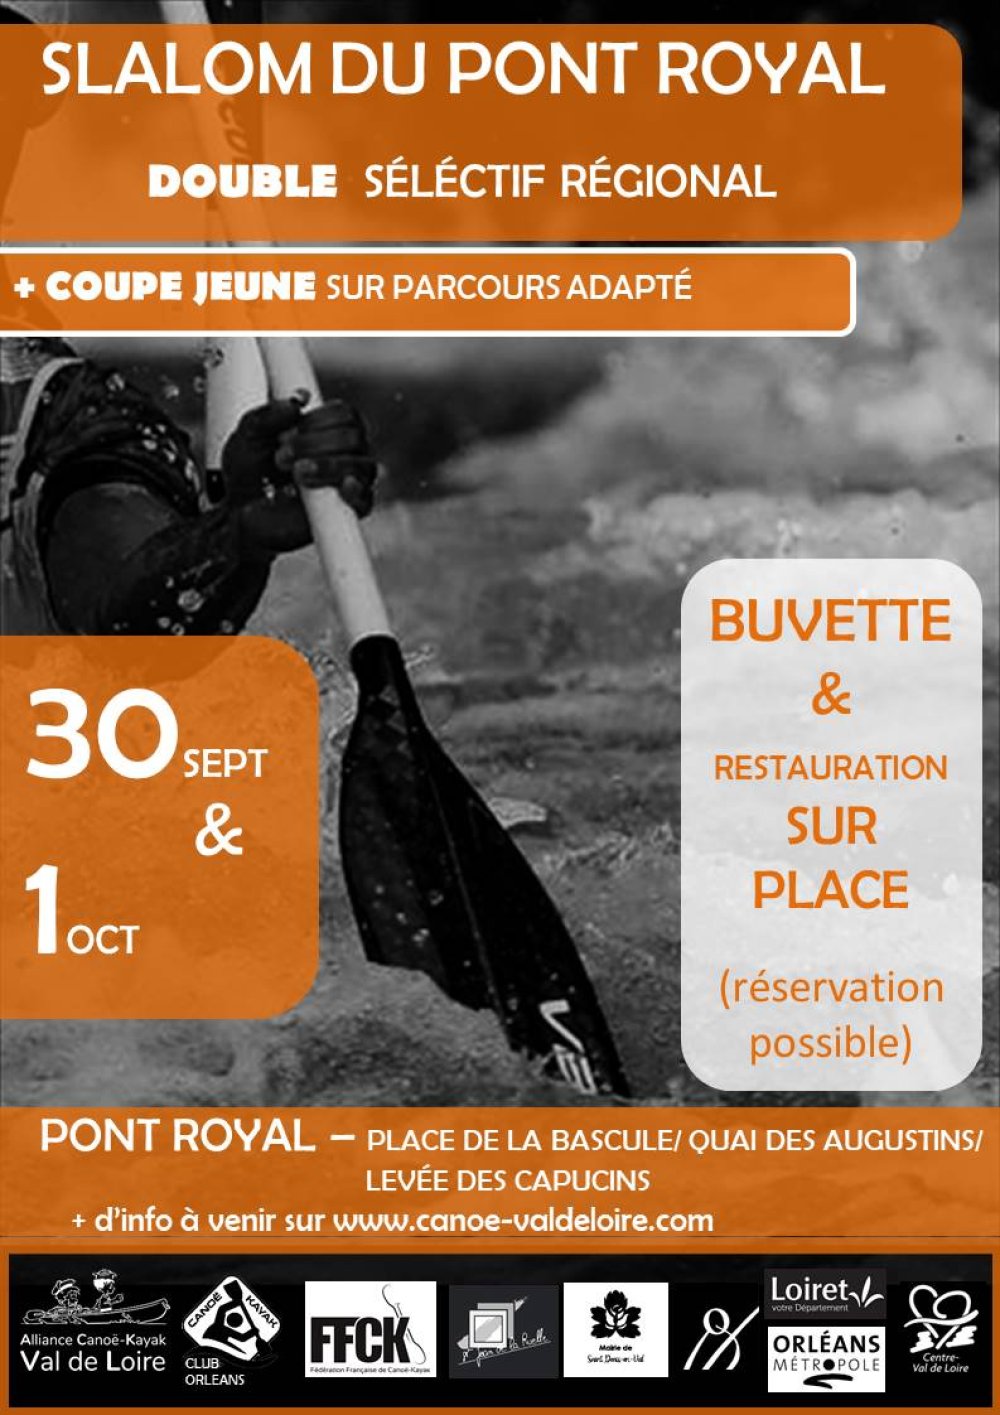 Coupe jeunes et double séléctif régional slalom du pont Royal 30 Sept et 01 Oct